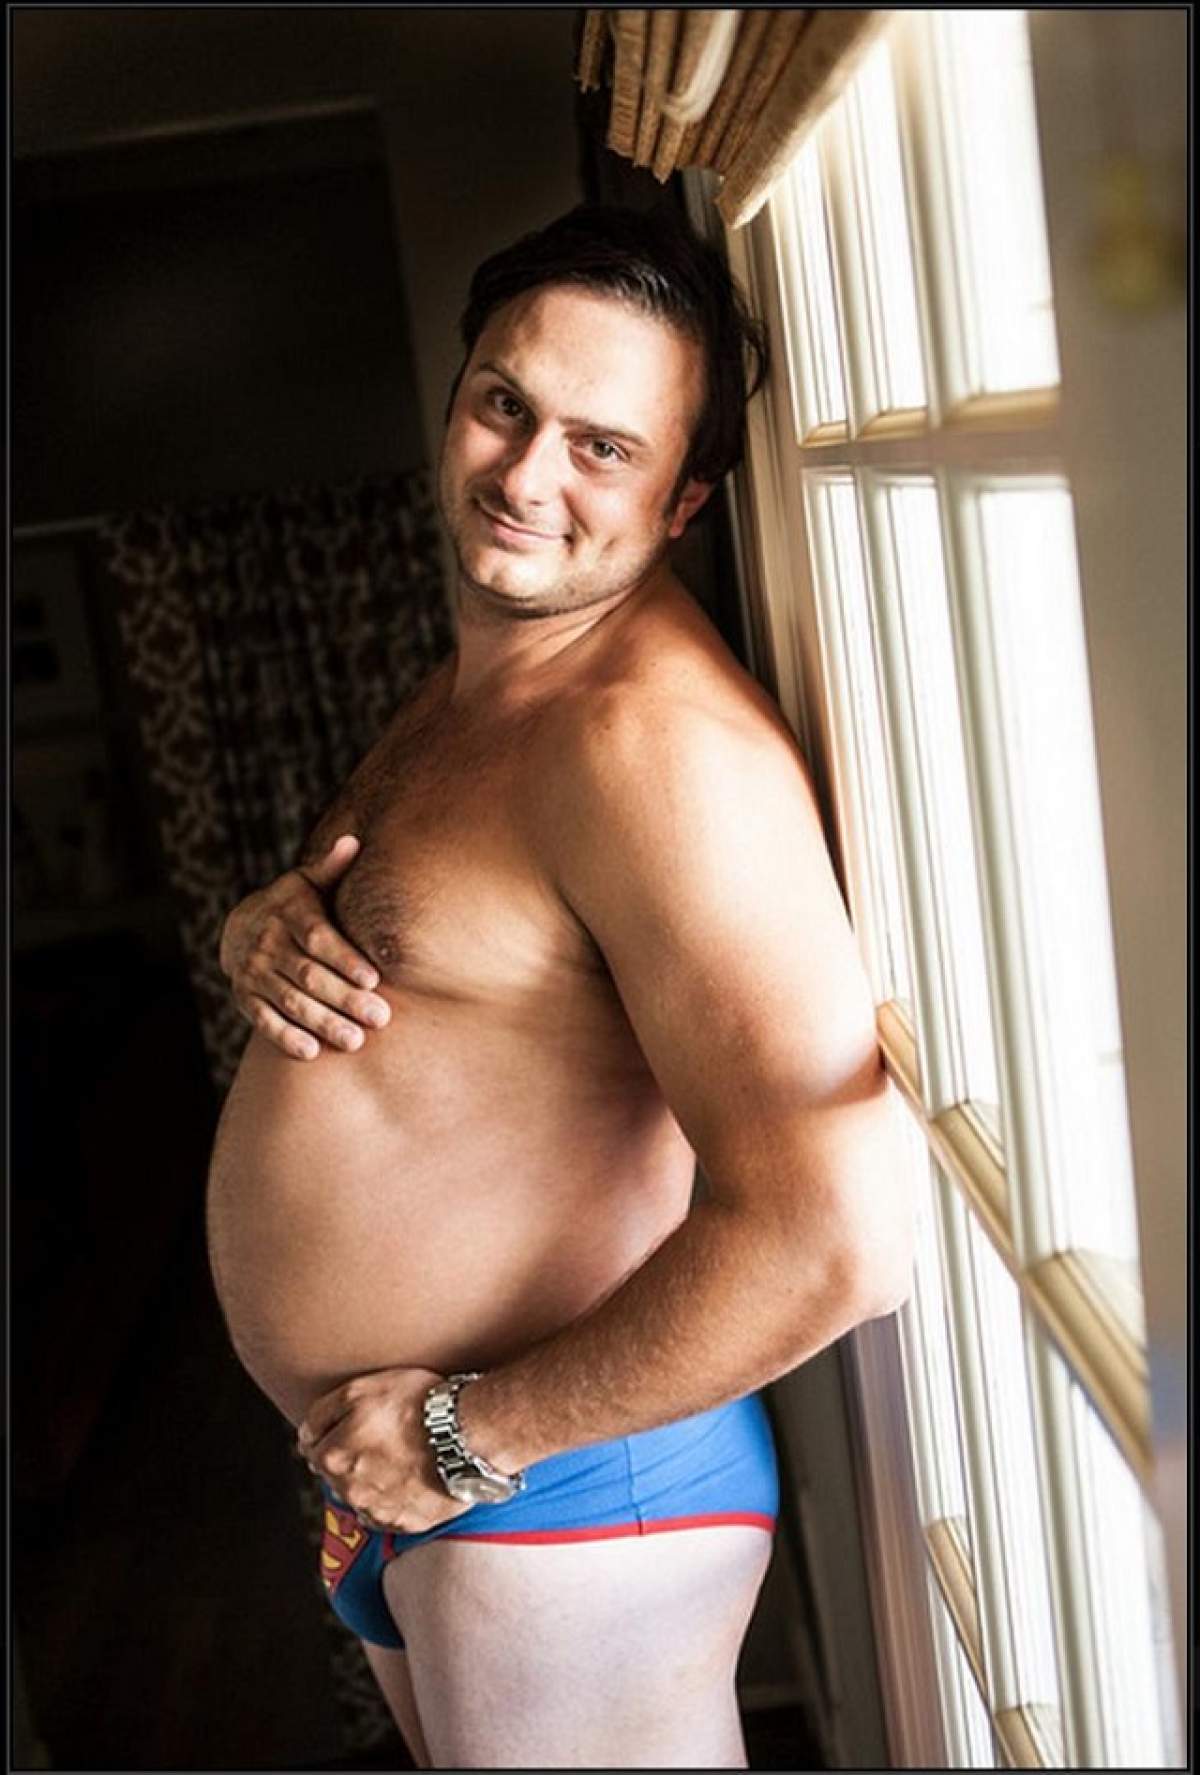 Imaginile pe care nu credeai că le vei vedea! Un bărbat însărcinat a pozat sexy şi a cucerit întreg Internetul!